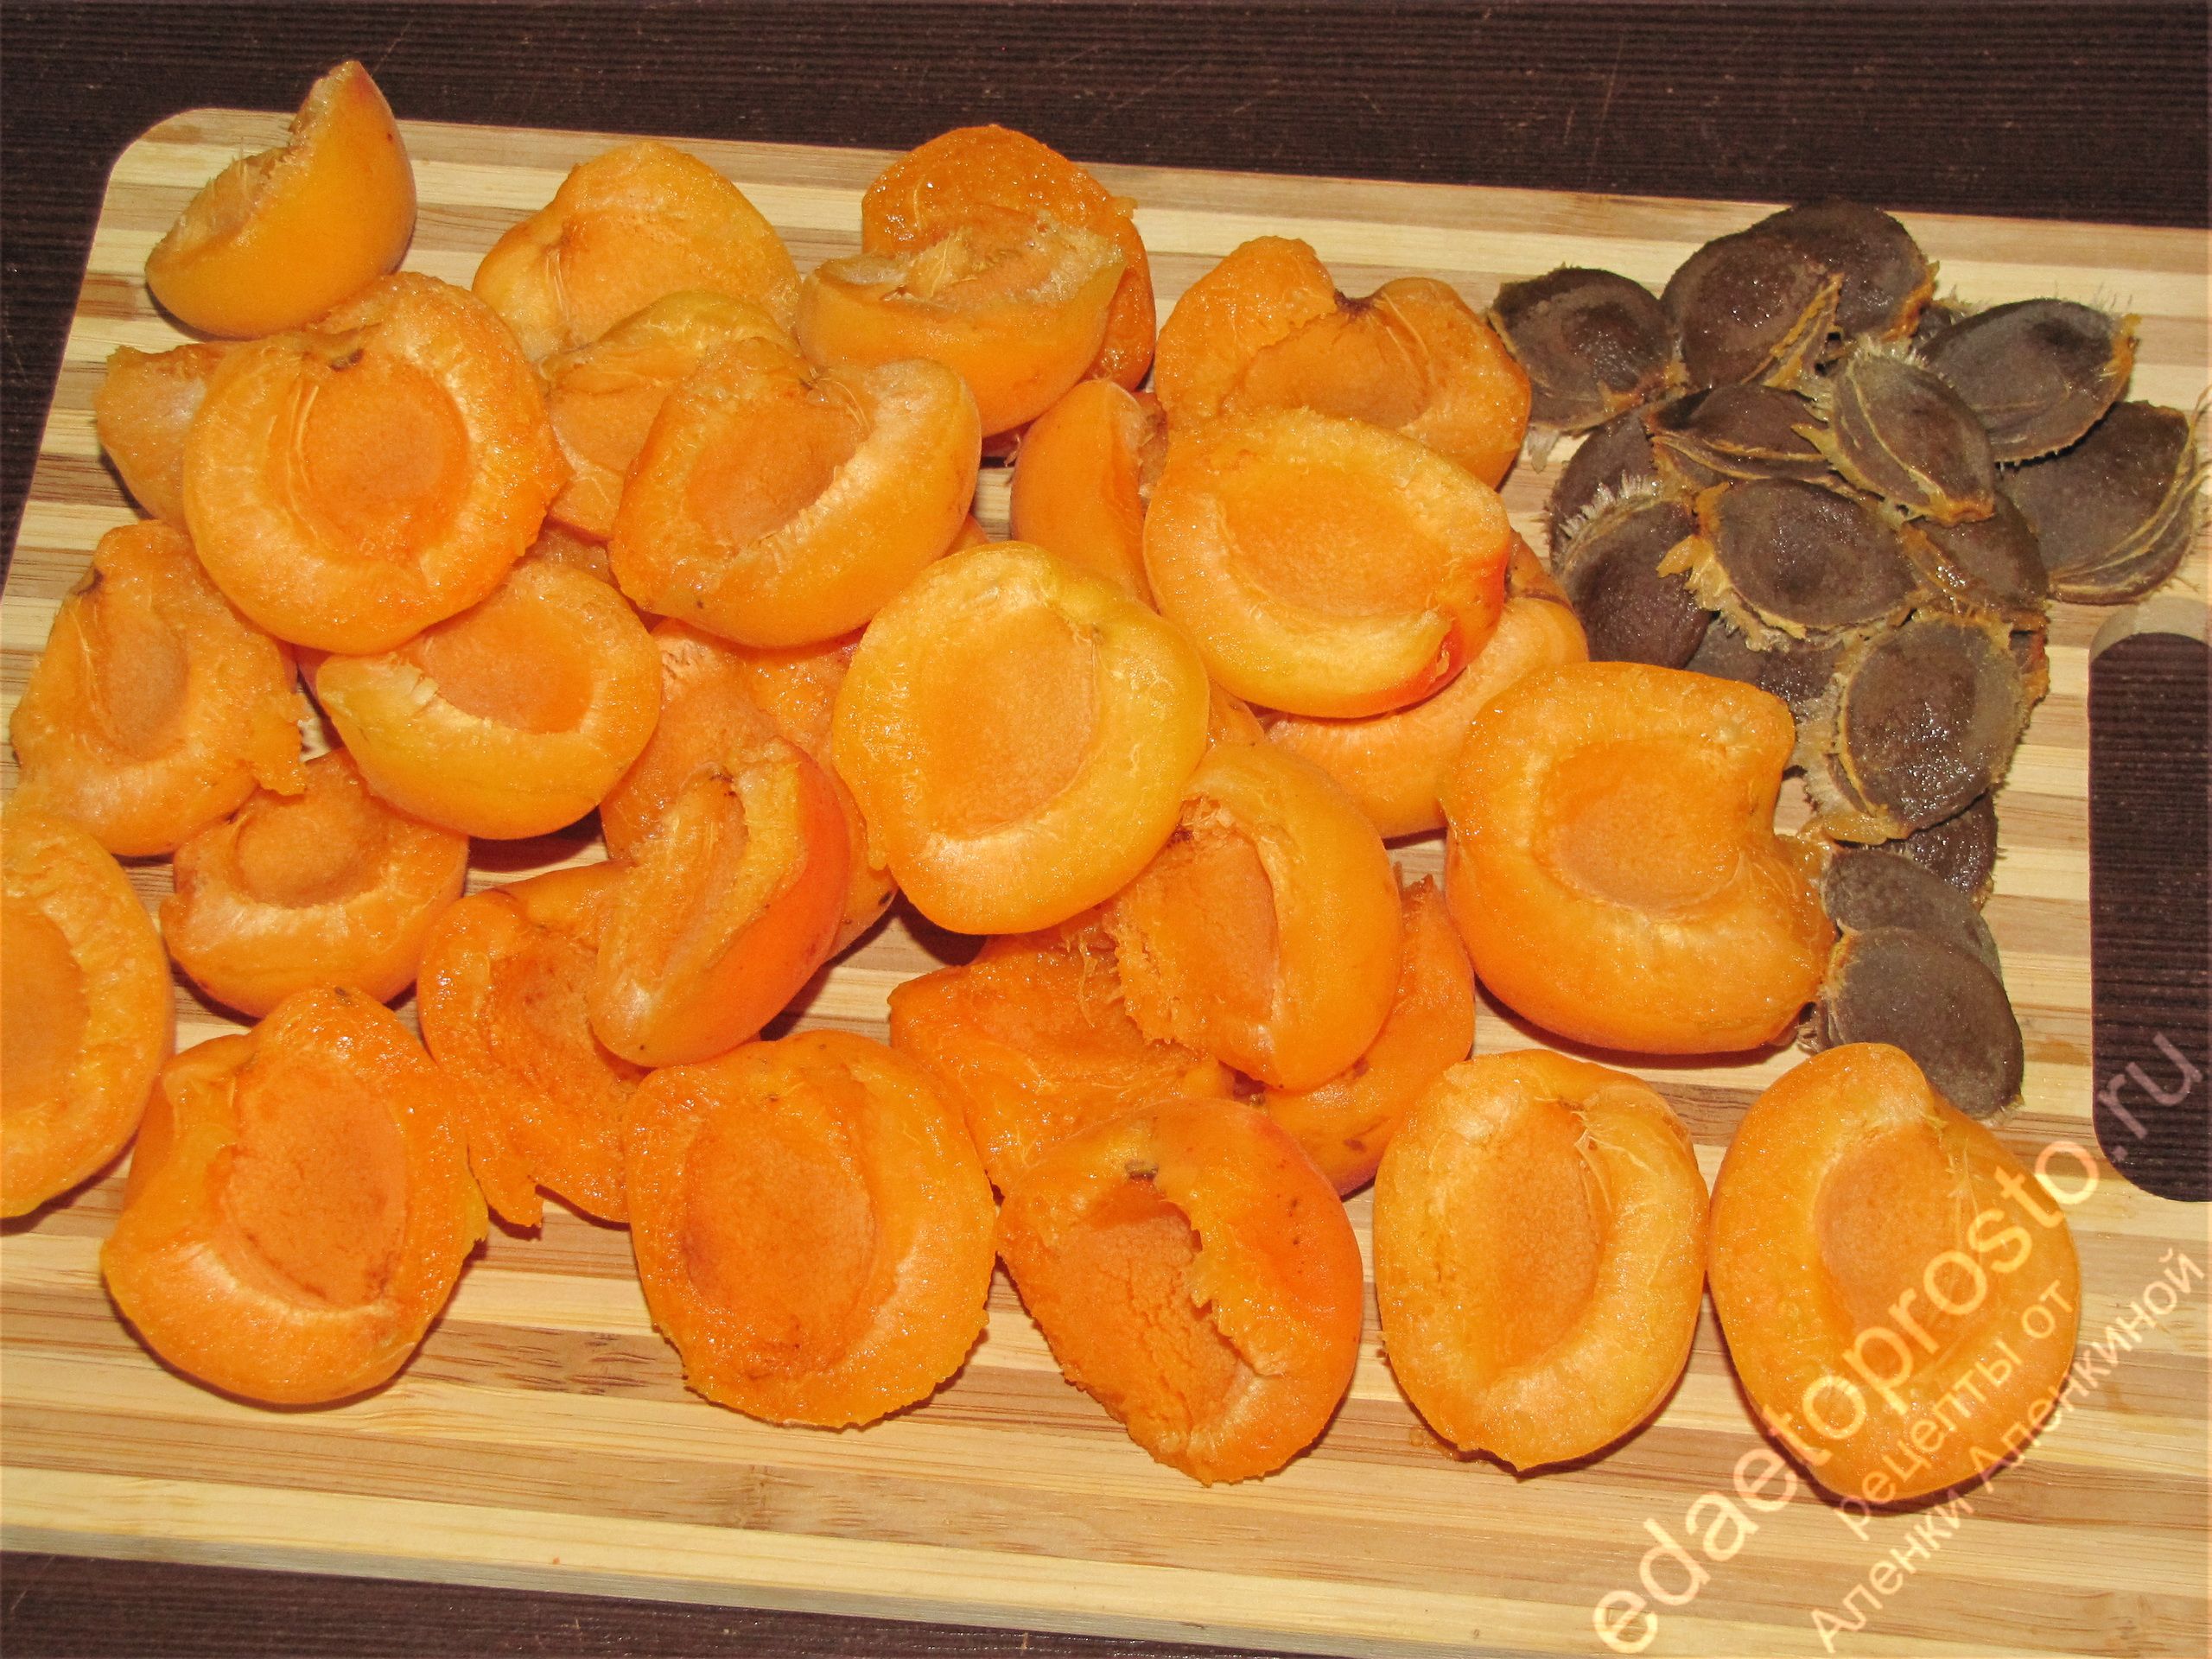 на фото абрикосы без косточек, красивое фото фруктов